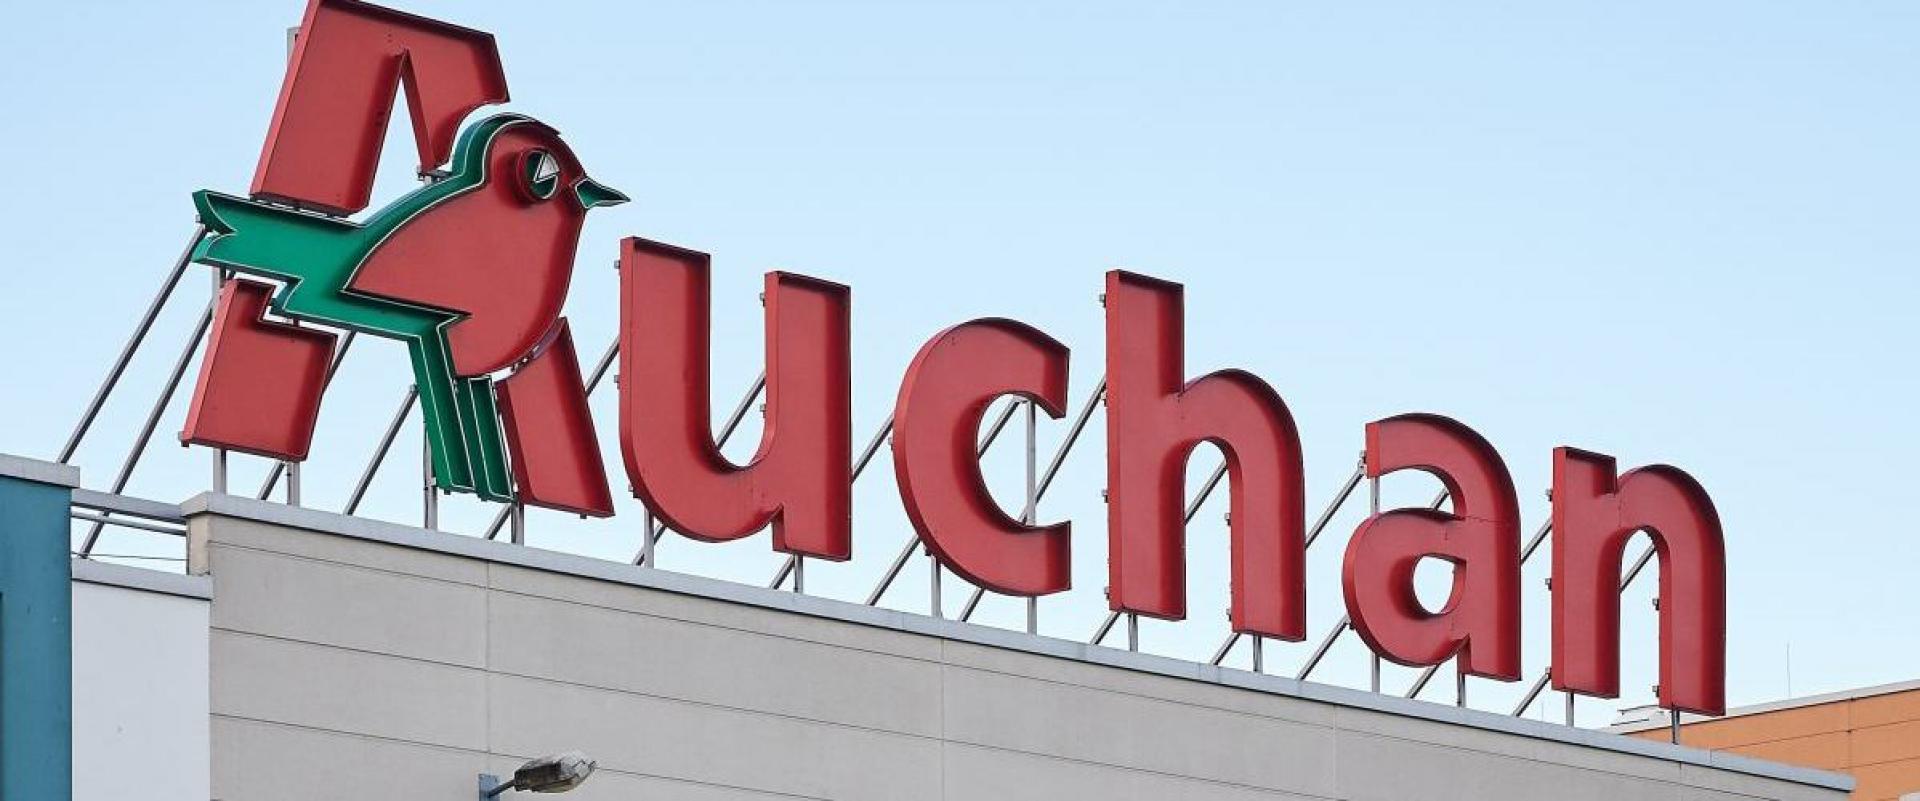 Auchan - Kupiec - Kosmetyki i Drogeria